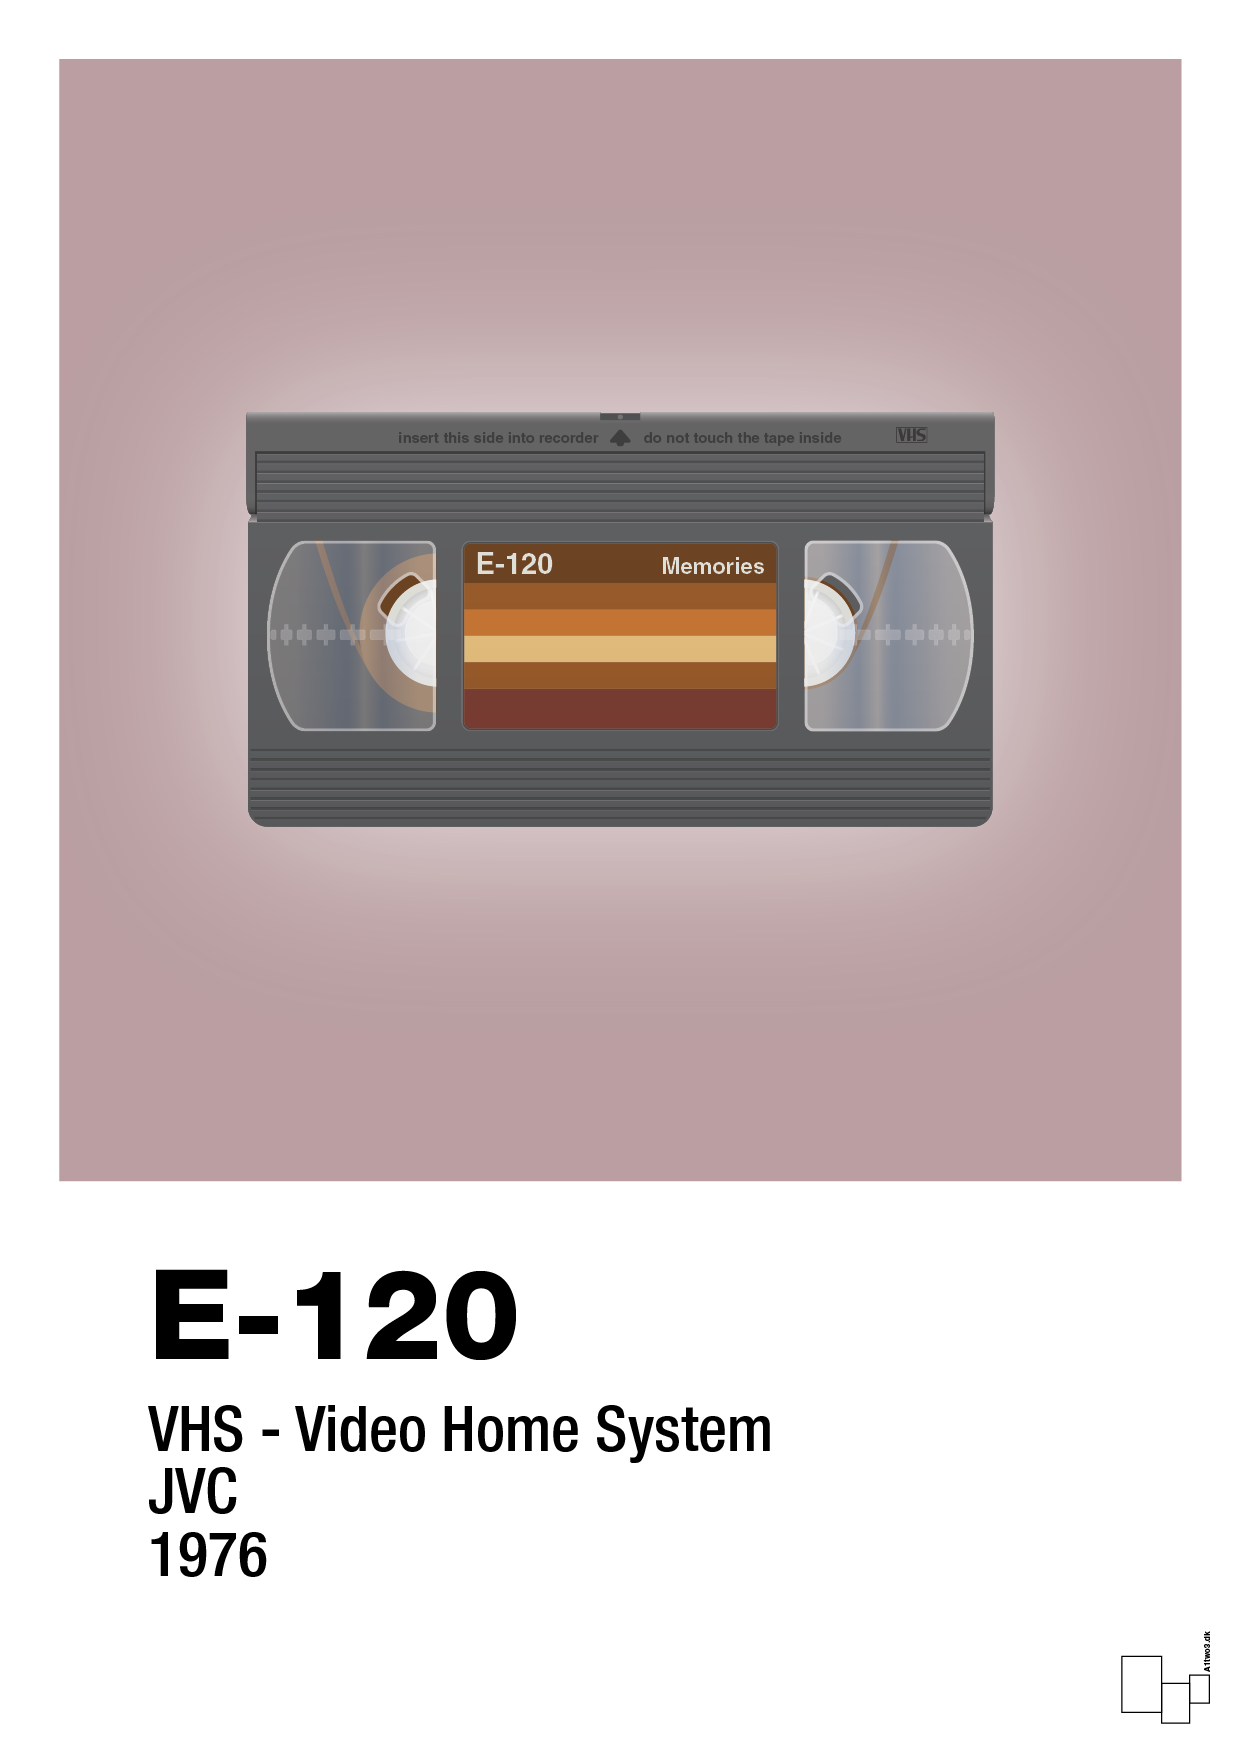 videobånd e-120 - Plakat med Grafik i Light Rose